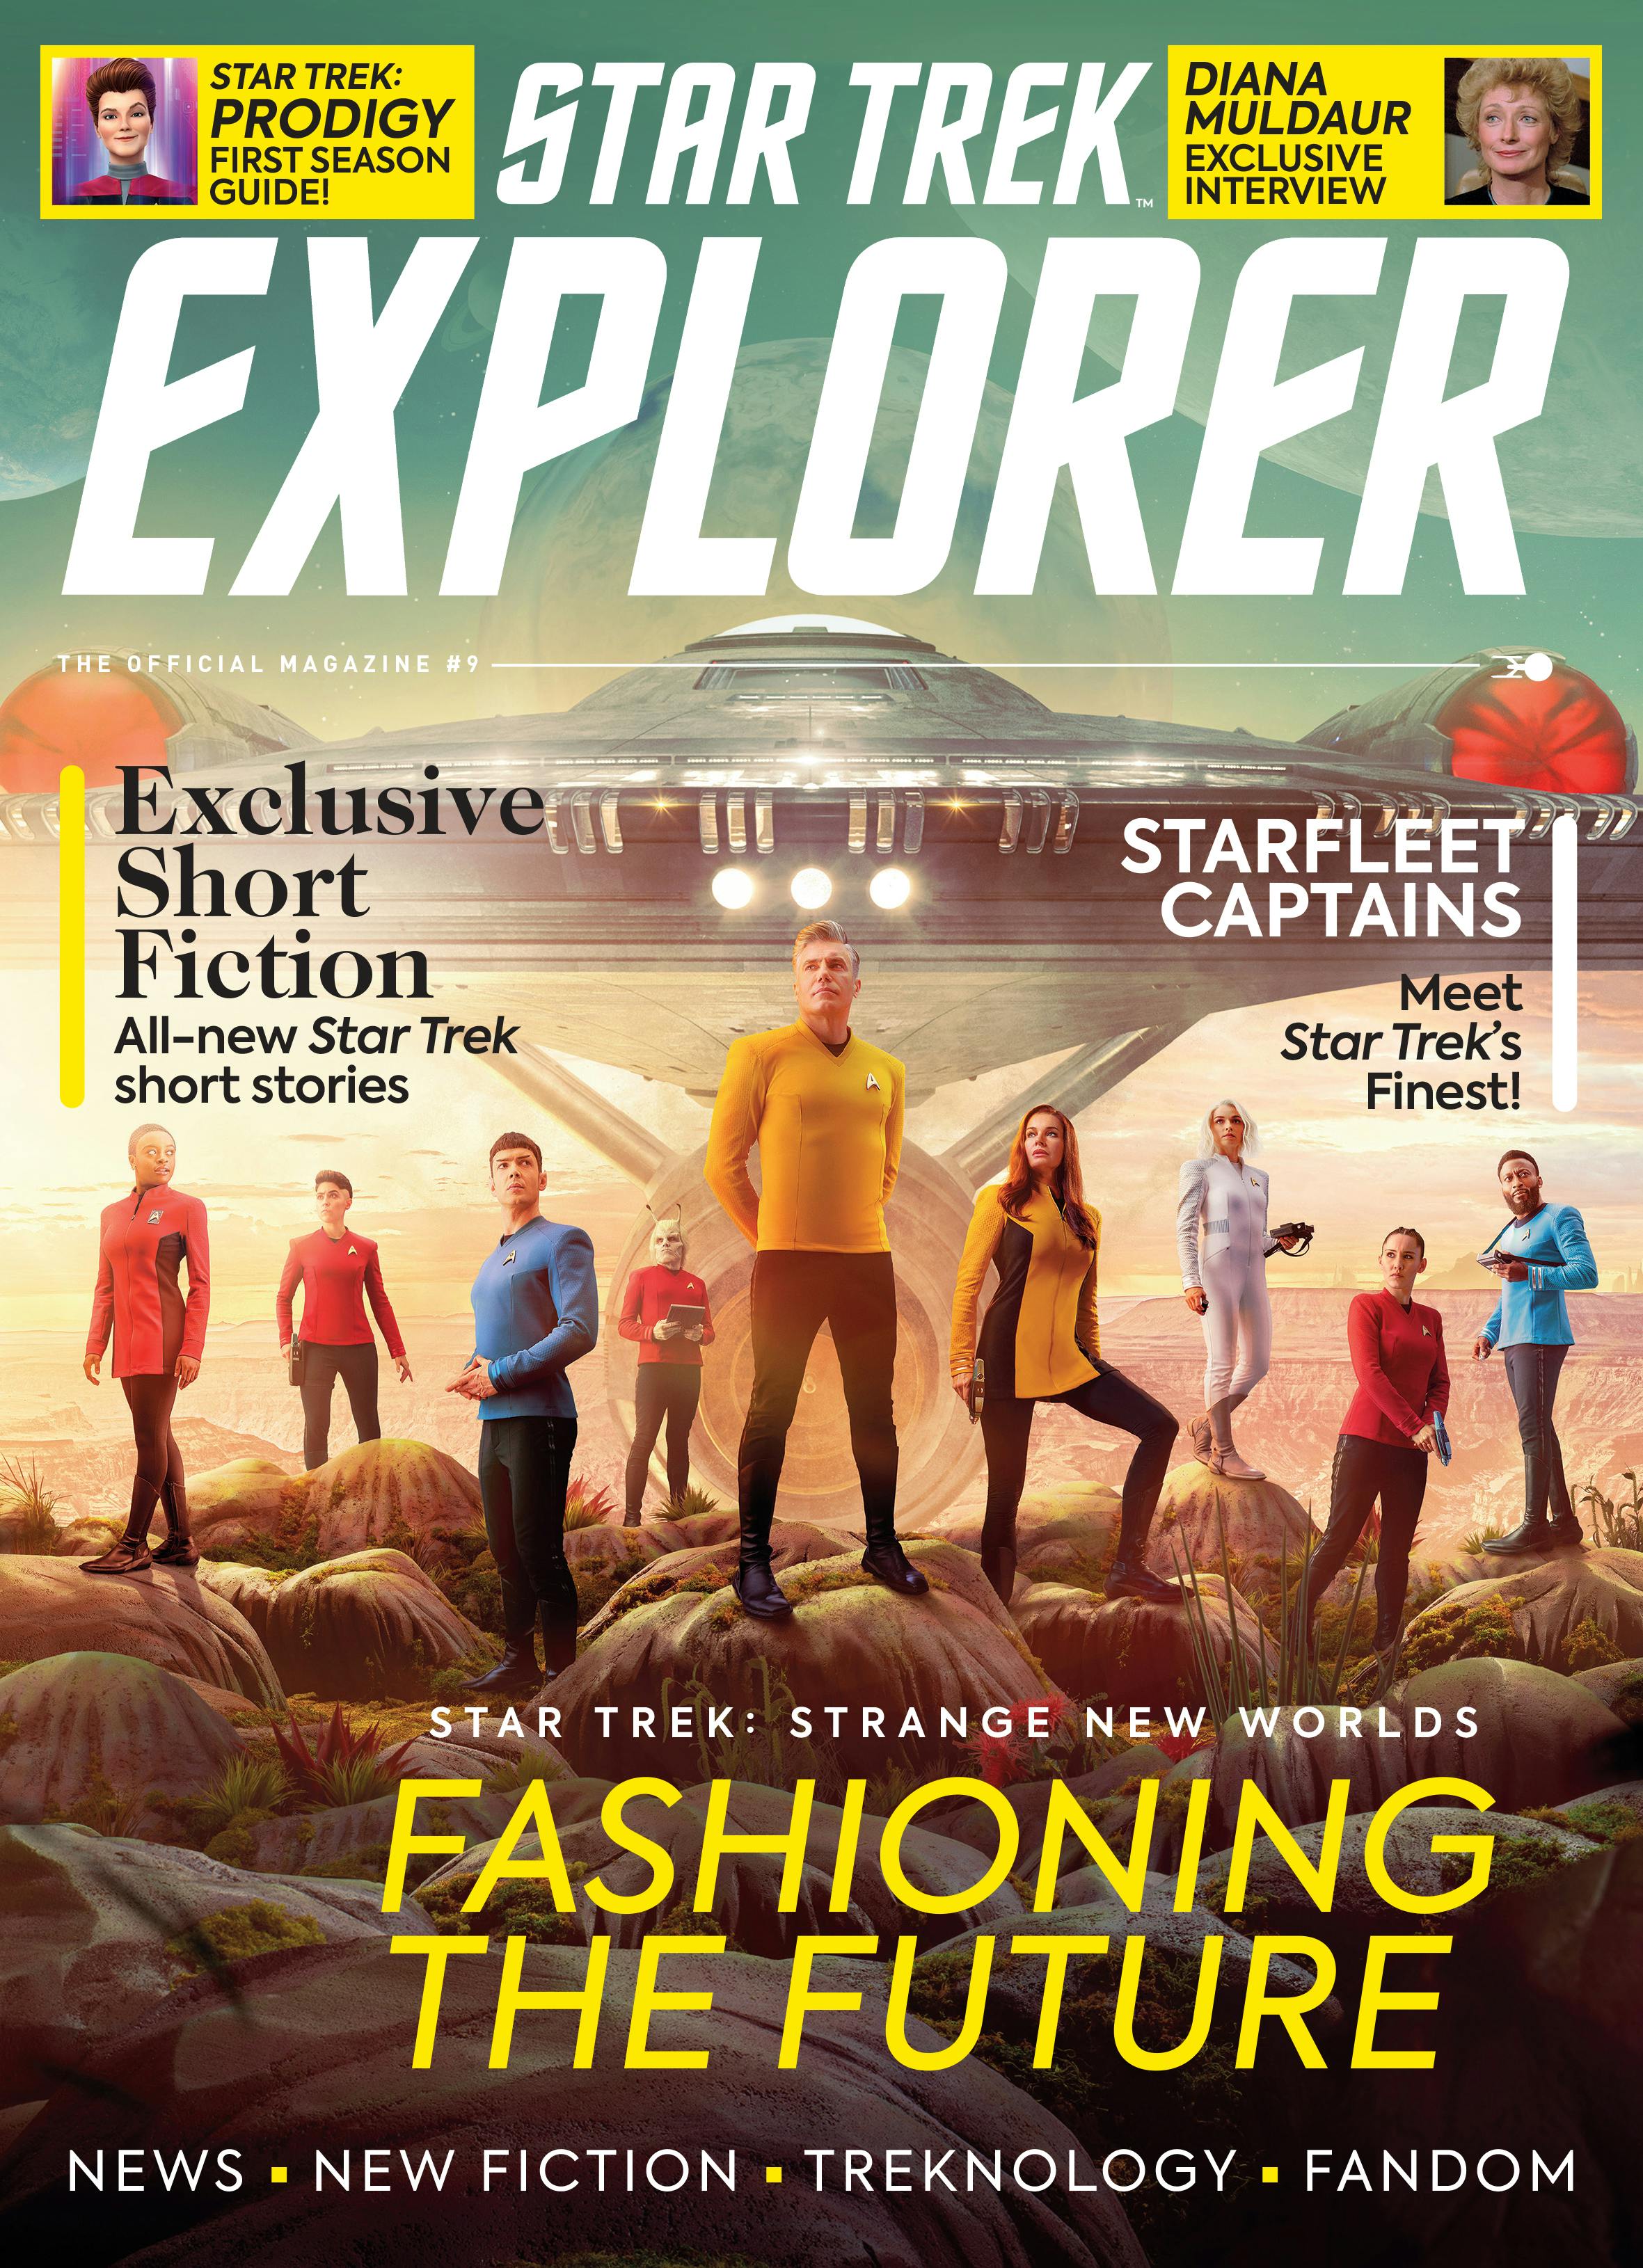 Star Trek Explorer #9 main cover featuring Star Trek: Strange New Worlds' Season 1 key art